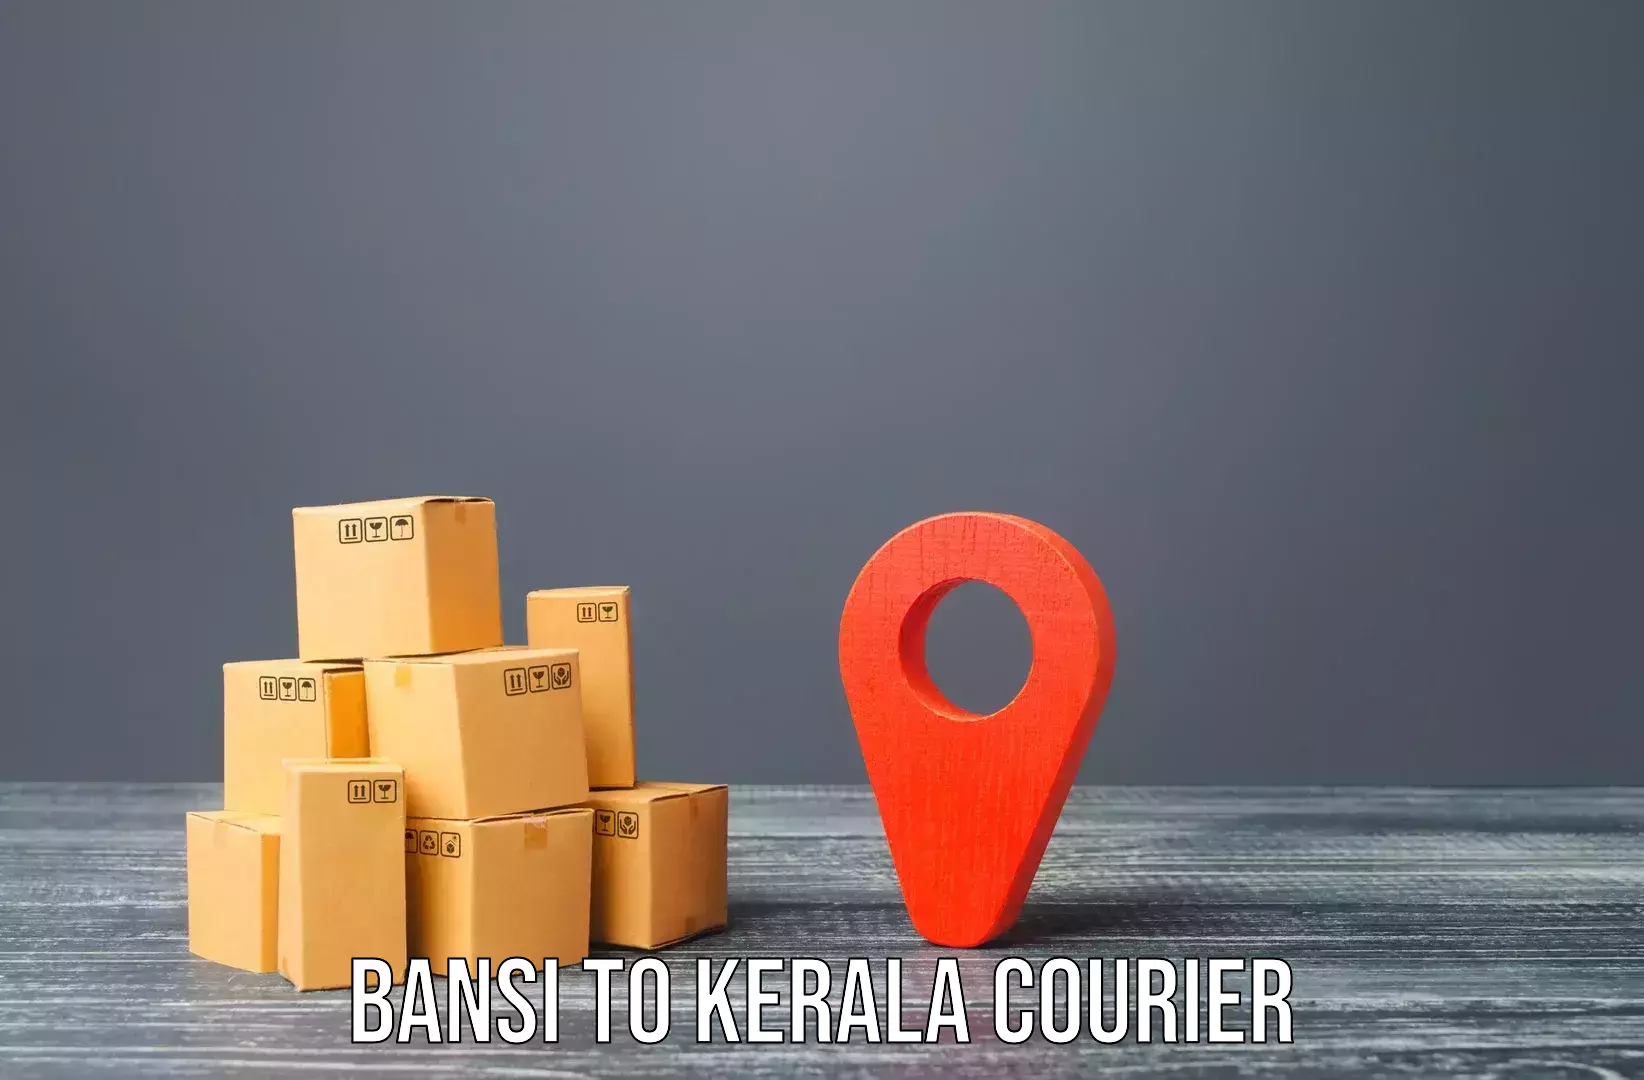 Home shifting experts Bansi to Kerala